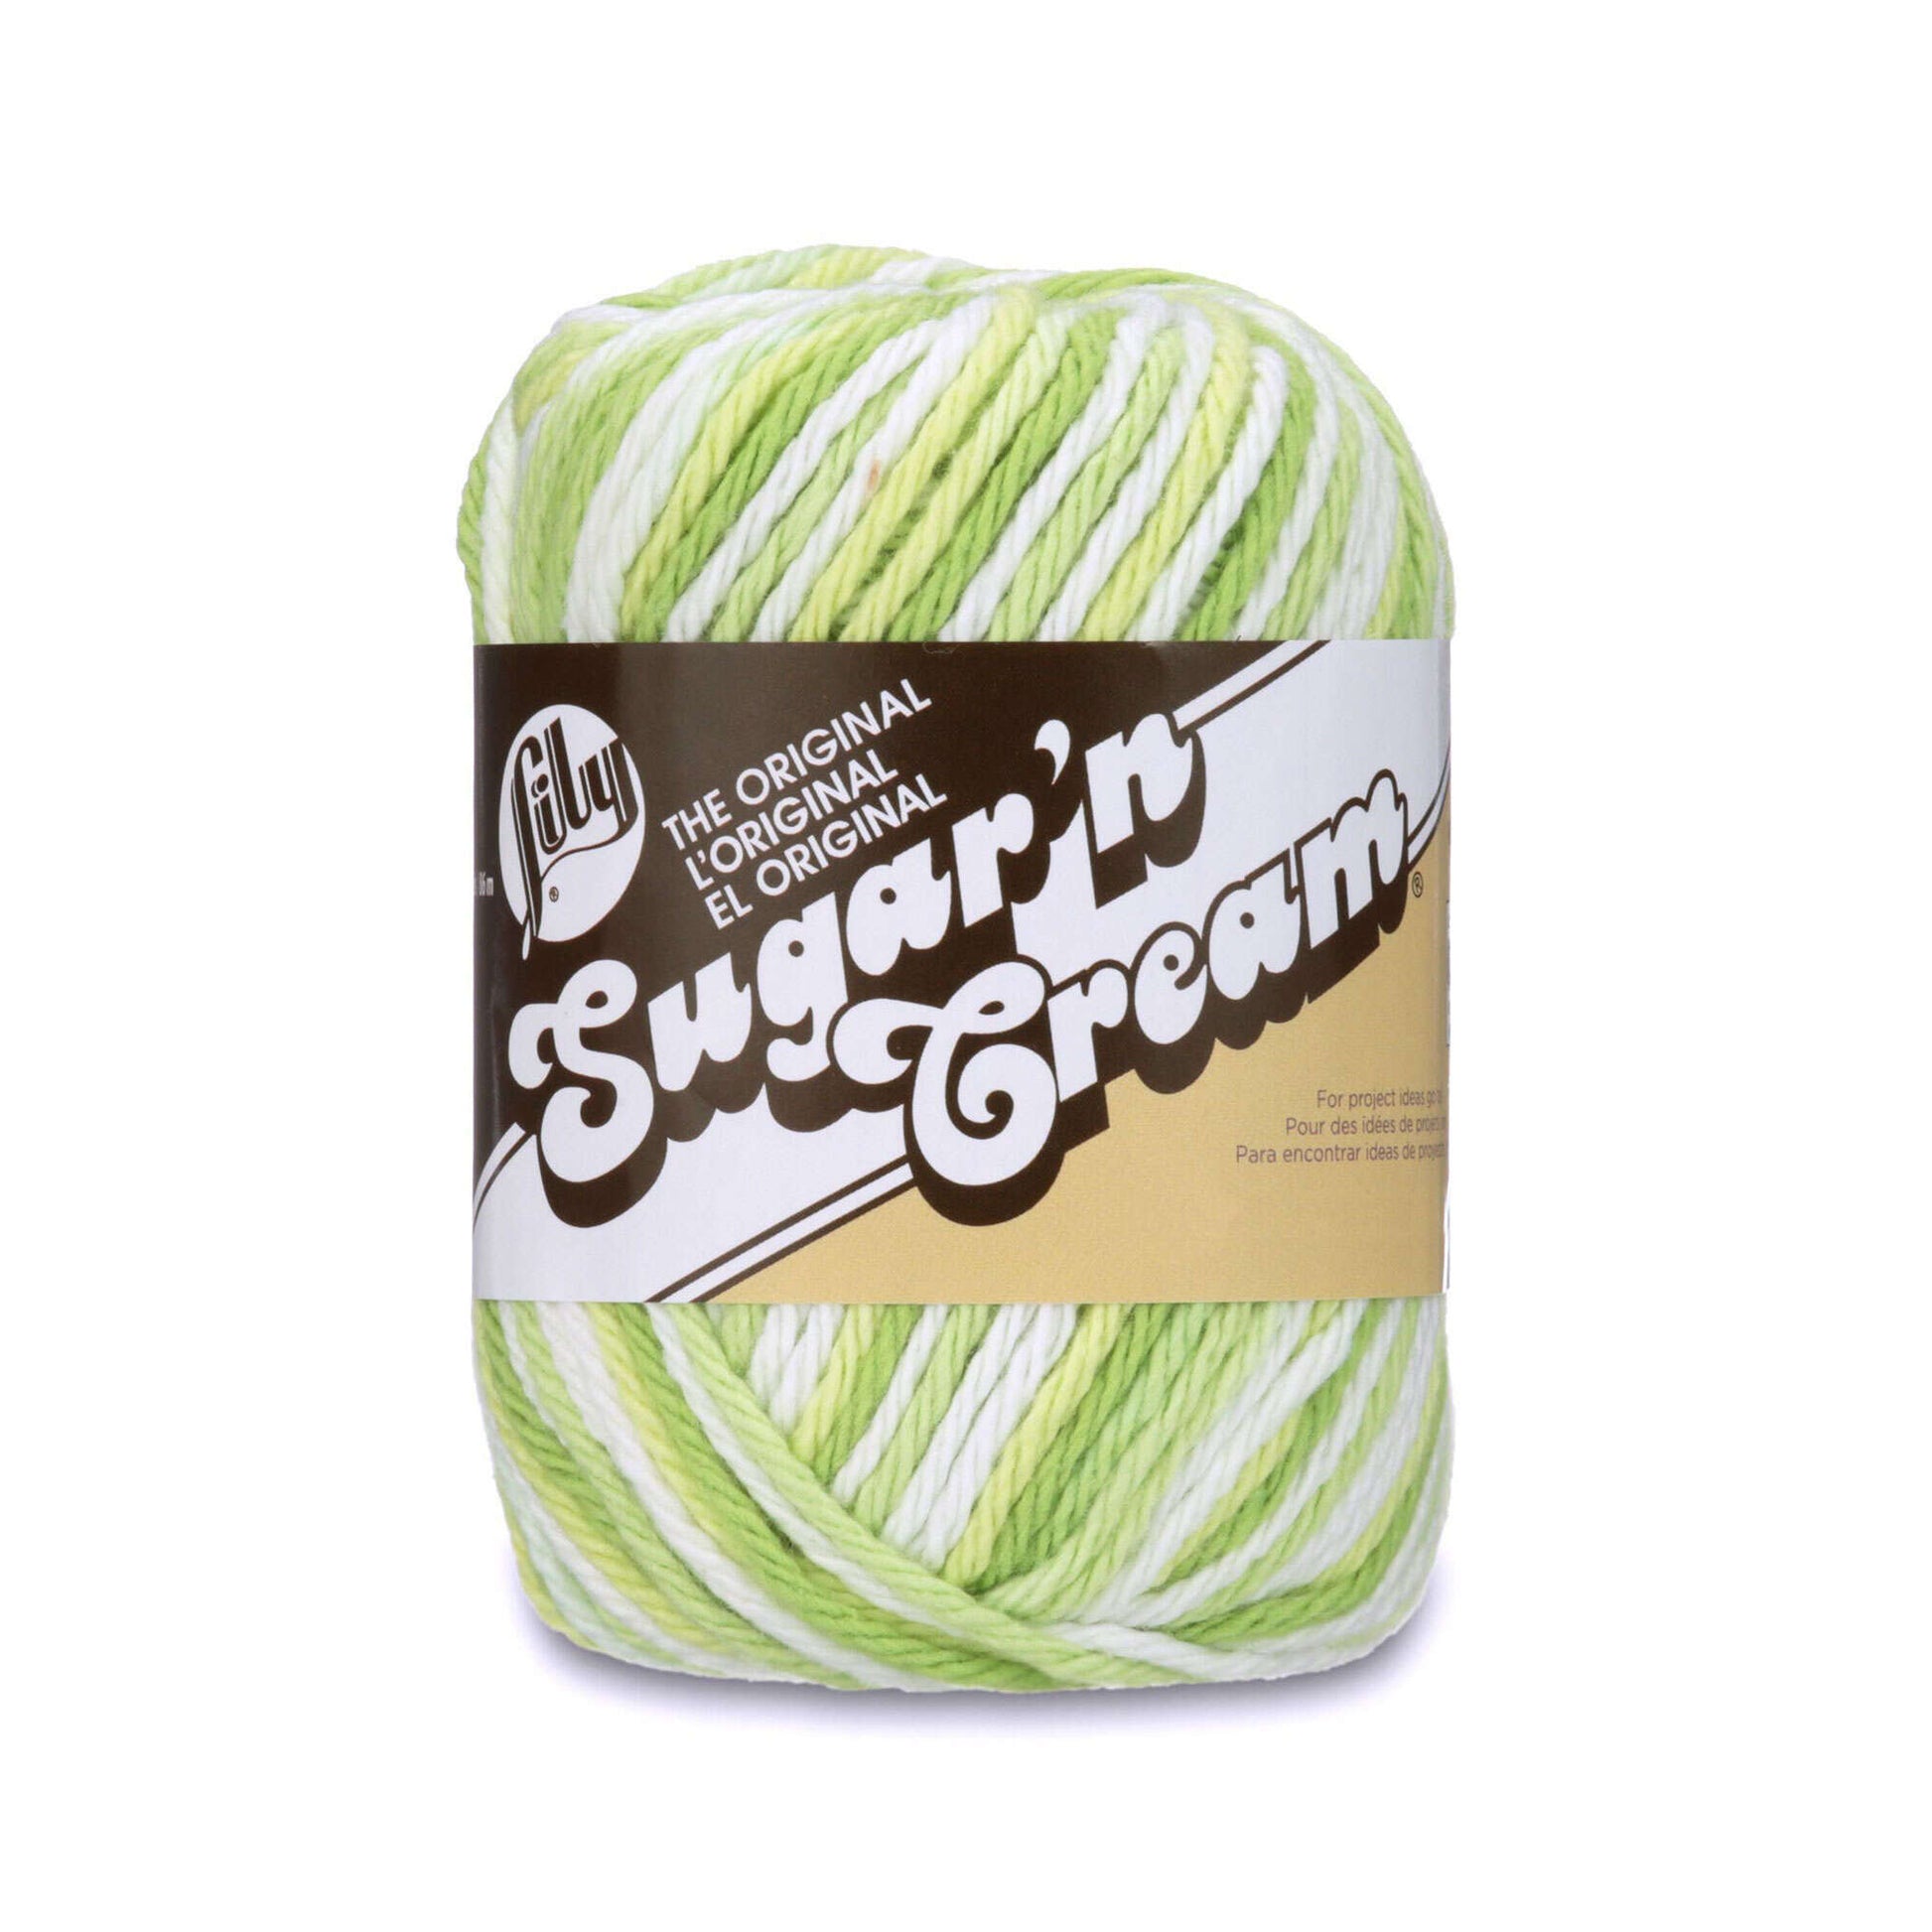 Lily Sugar'n Cream Ombres Yarn